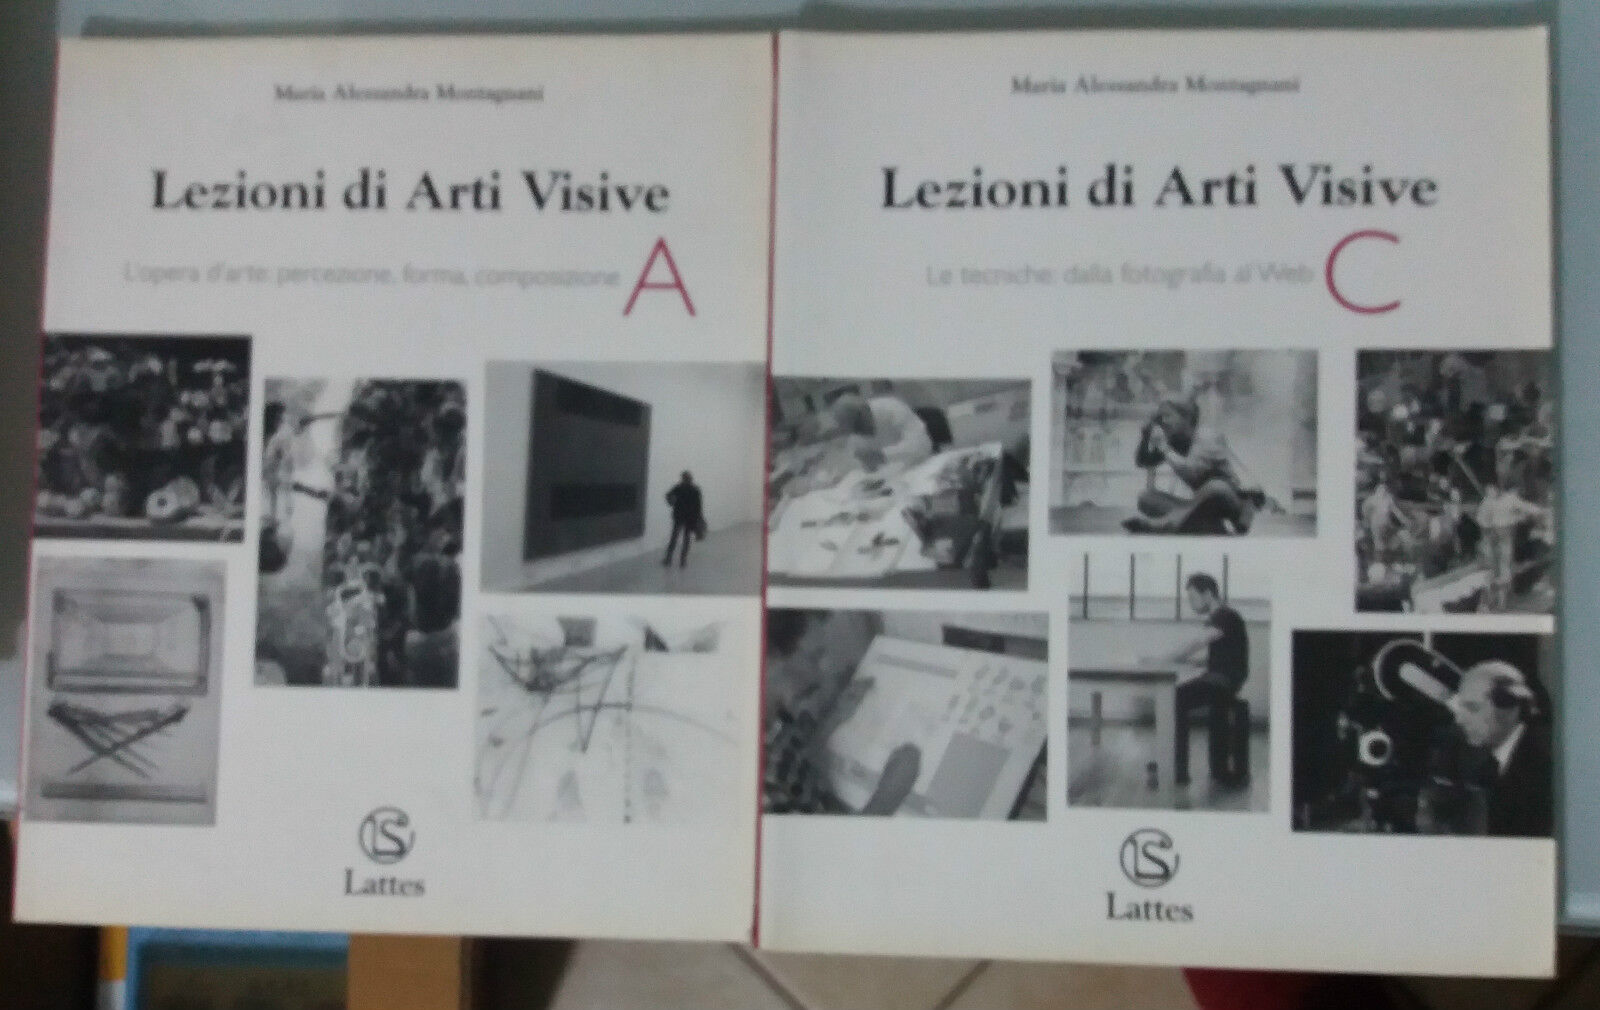 Lezioni di Arti Visive A-C - Maria Alessandra Montagnani - Lattes - 2003 - G